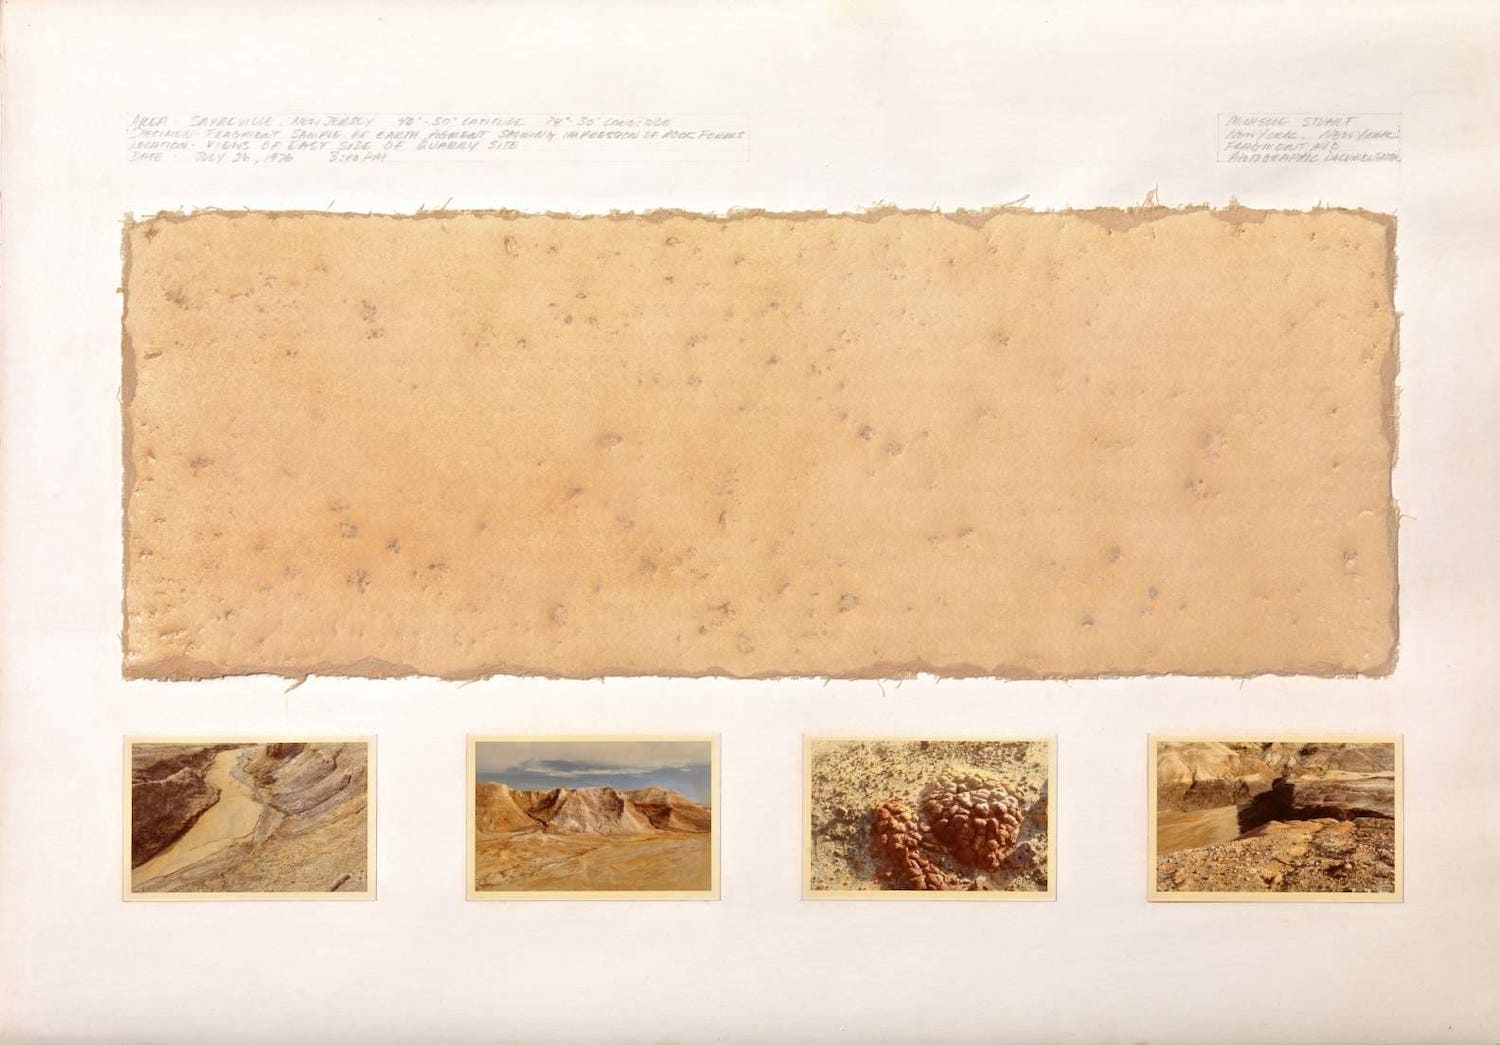 'Area-Sayreville, New Jersey 40-30 Latitud 74-30 Longitud. Fragmento de muestra de tierra que revela la impresión de formas rocosas.' 1976. | Michelle Stuart ©